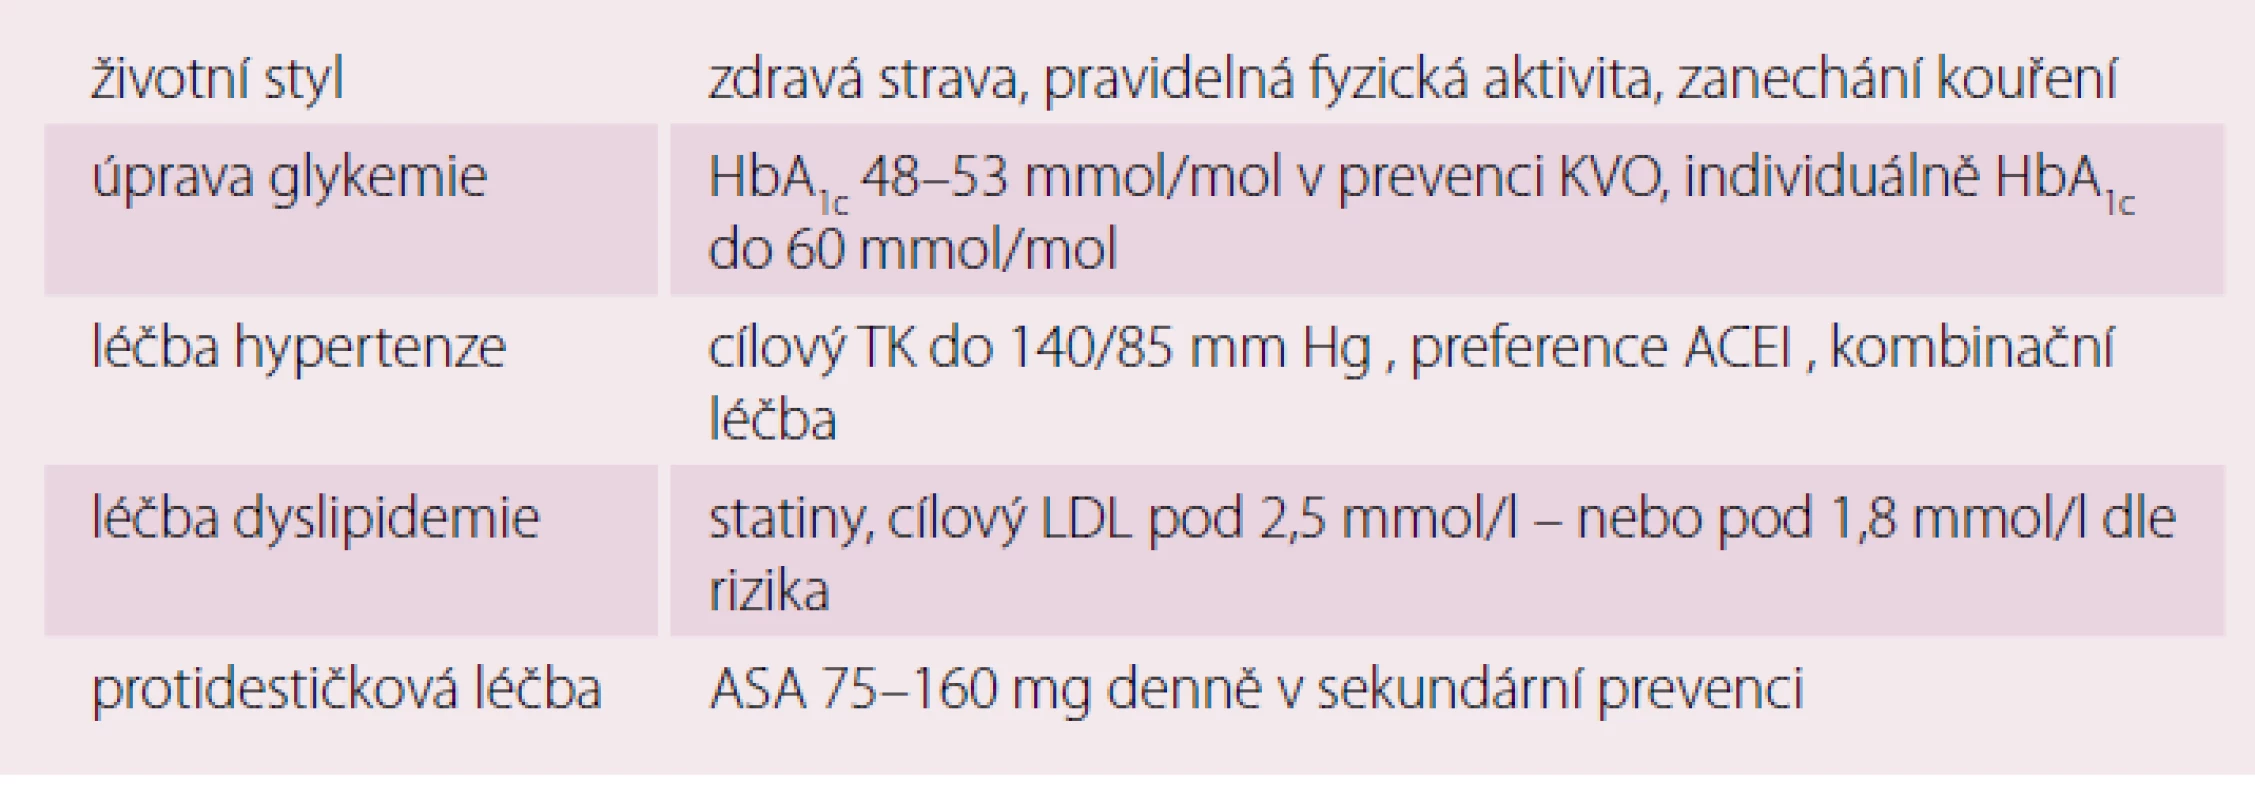 Rizikové faktory a prevence vzniku DKM [10].